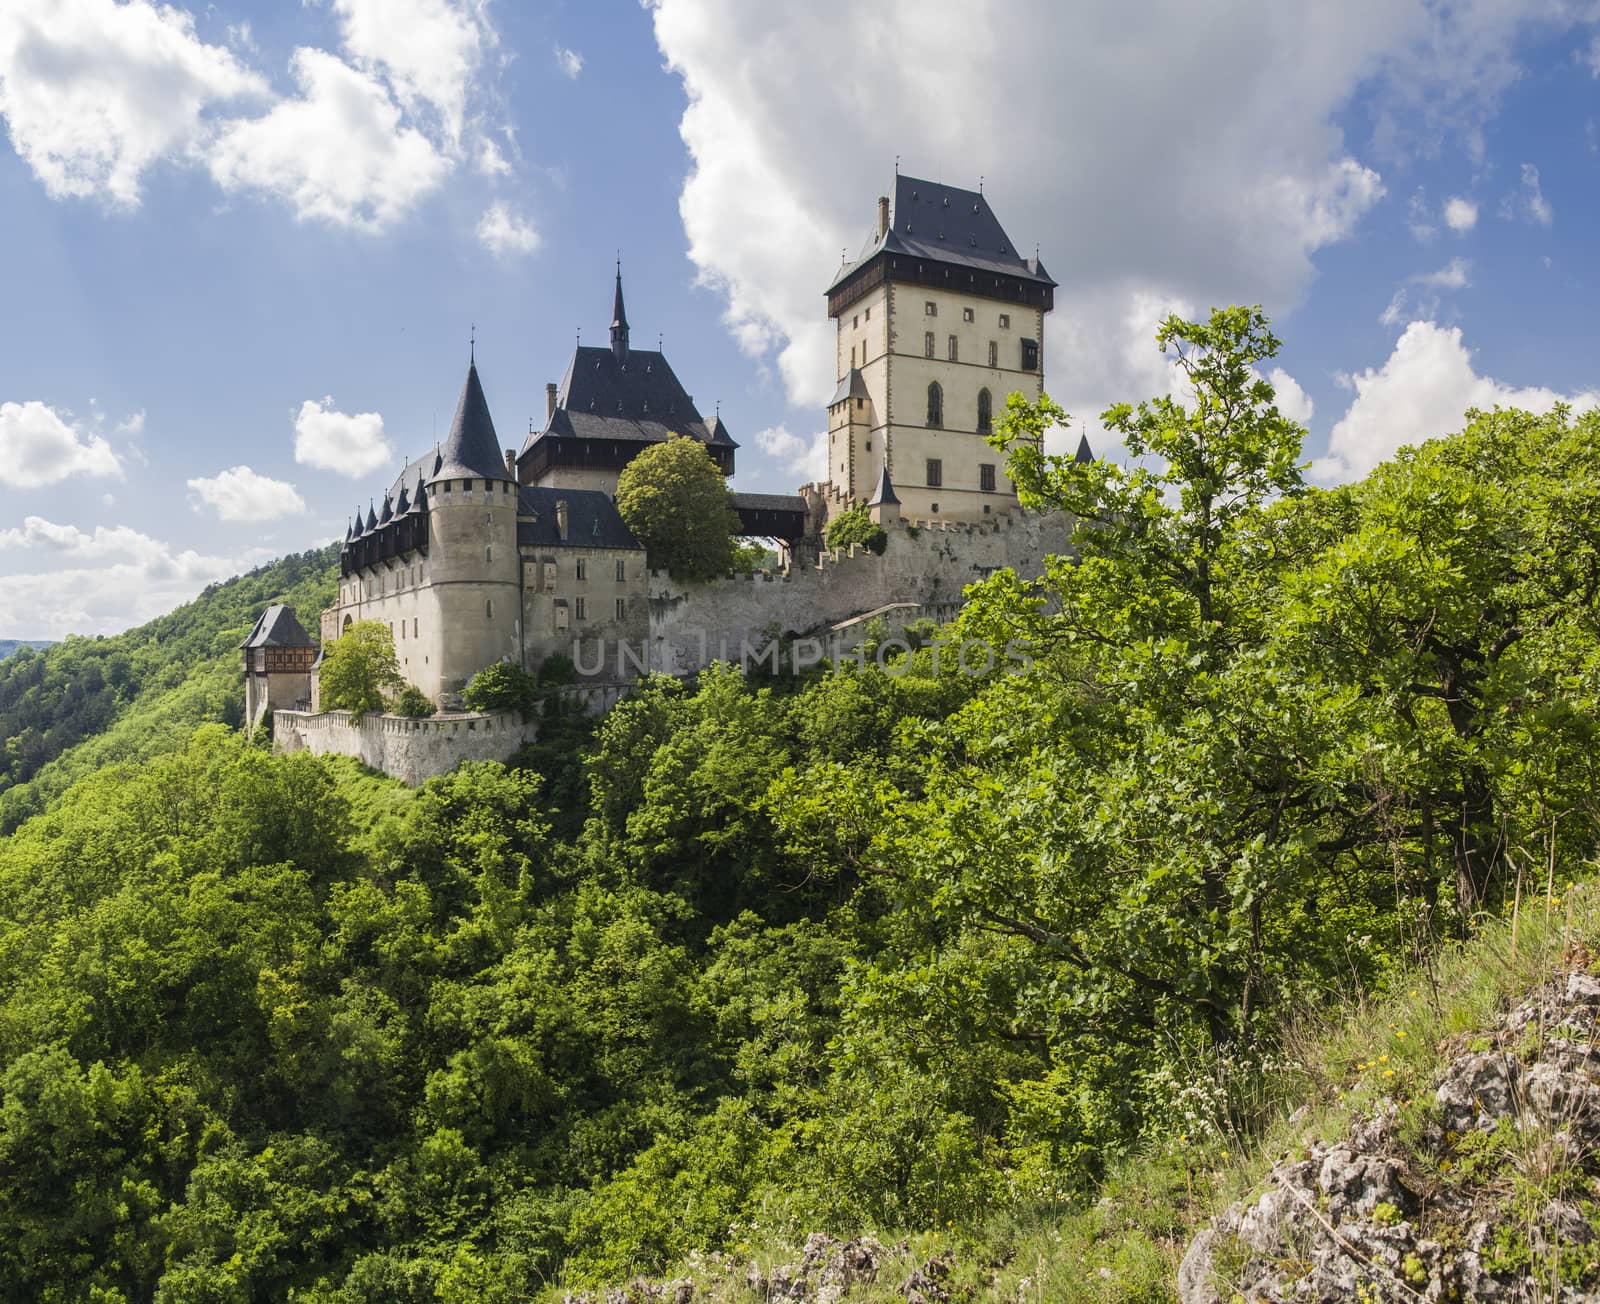 Karlstejn castle in summer, one of the most famous castles in Czech Republic

